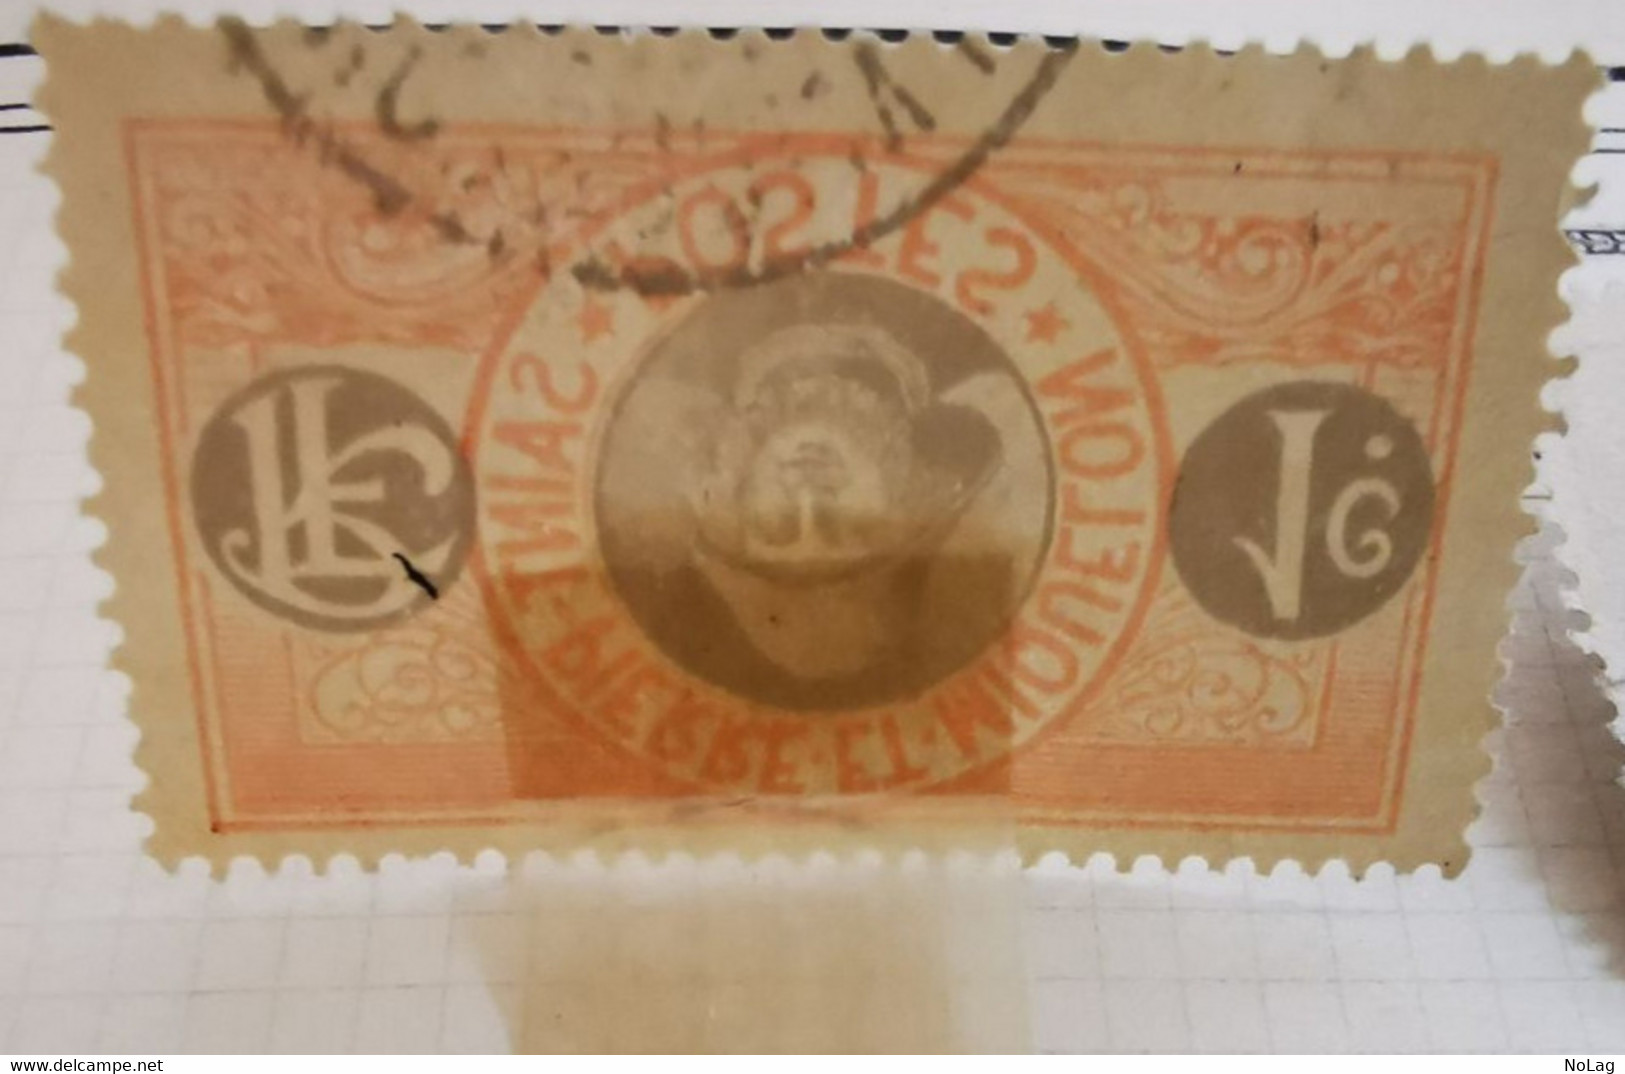 Saint-Pierre-et-Miquelon - Colonies Françaises - 1909-1932 - Y&T N°136 /*/, N°78, N°79 /0/ Et N°81a /*/ - Unused Stamps